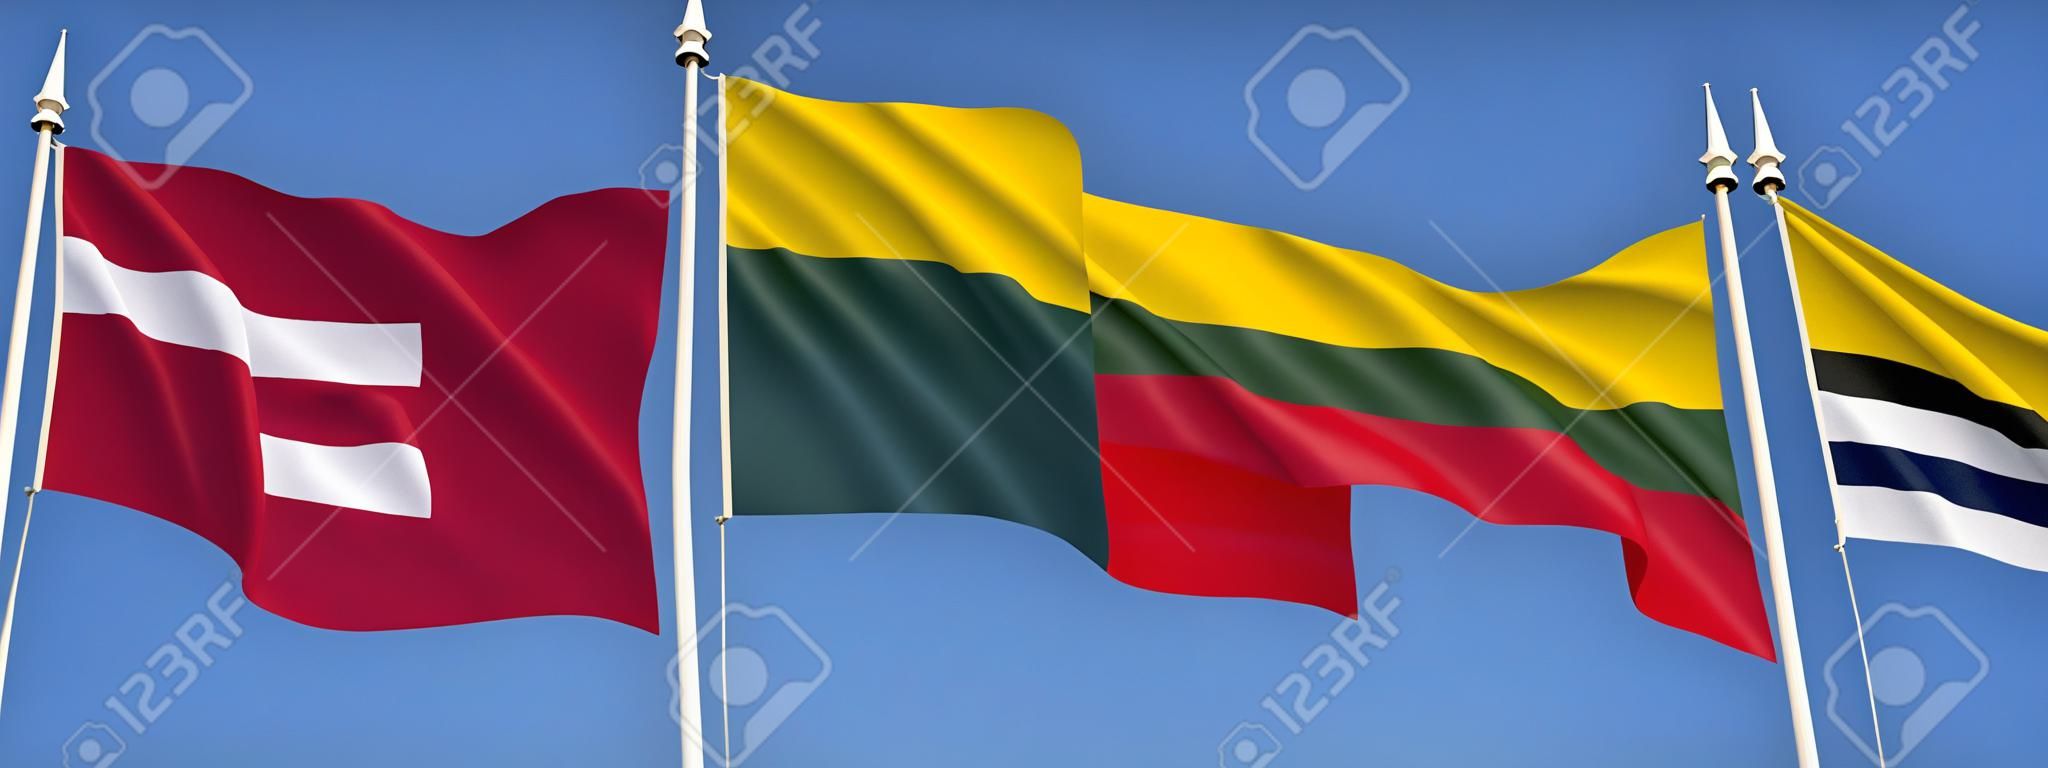 Banderas de los países bálticos - Letonia, Lituania y Estonia.